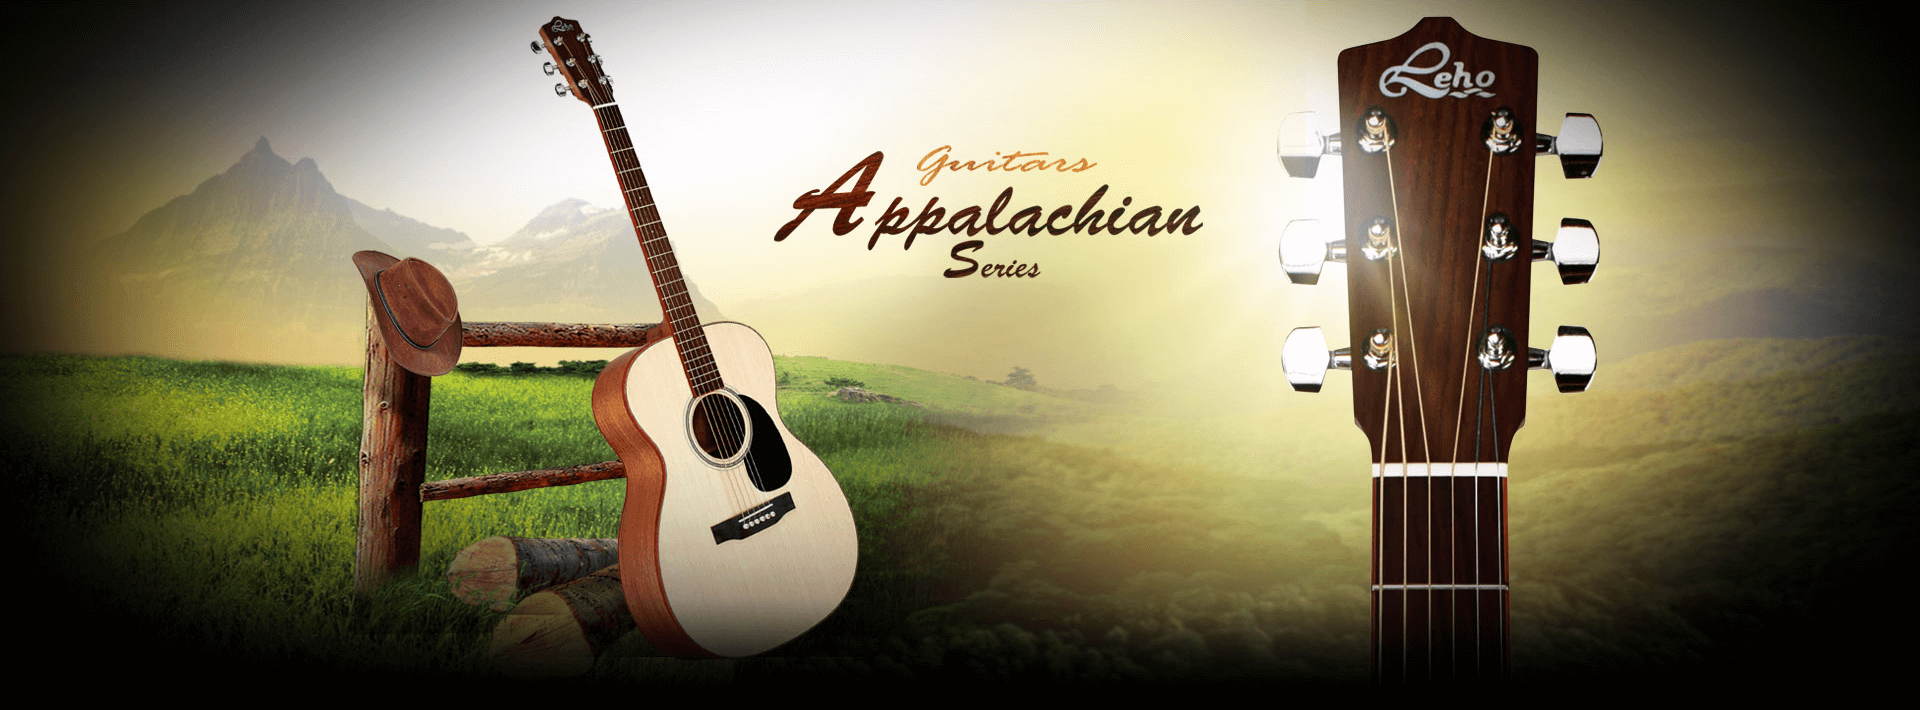 guitars-appalachian